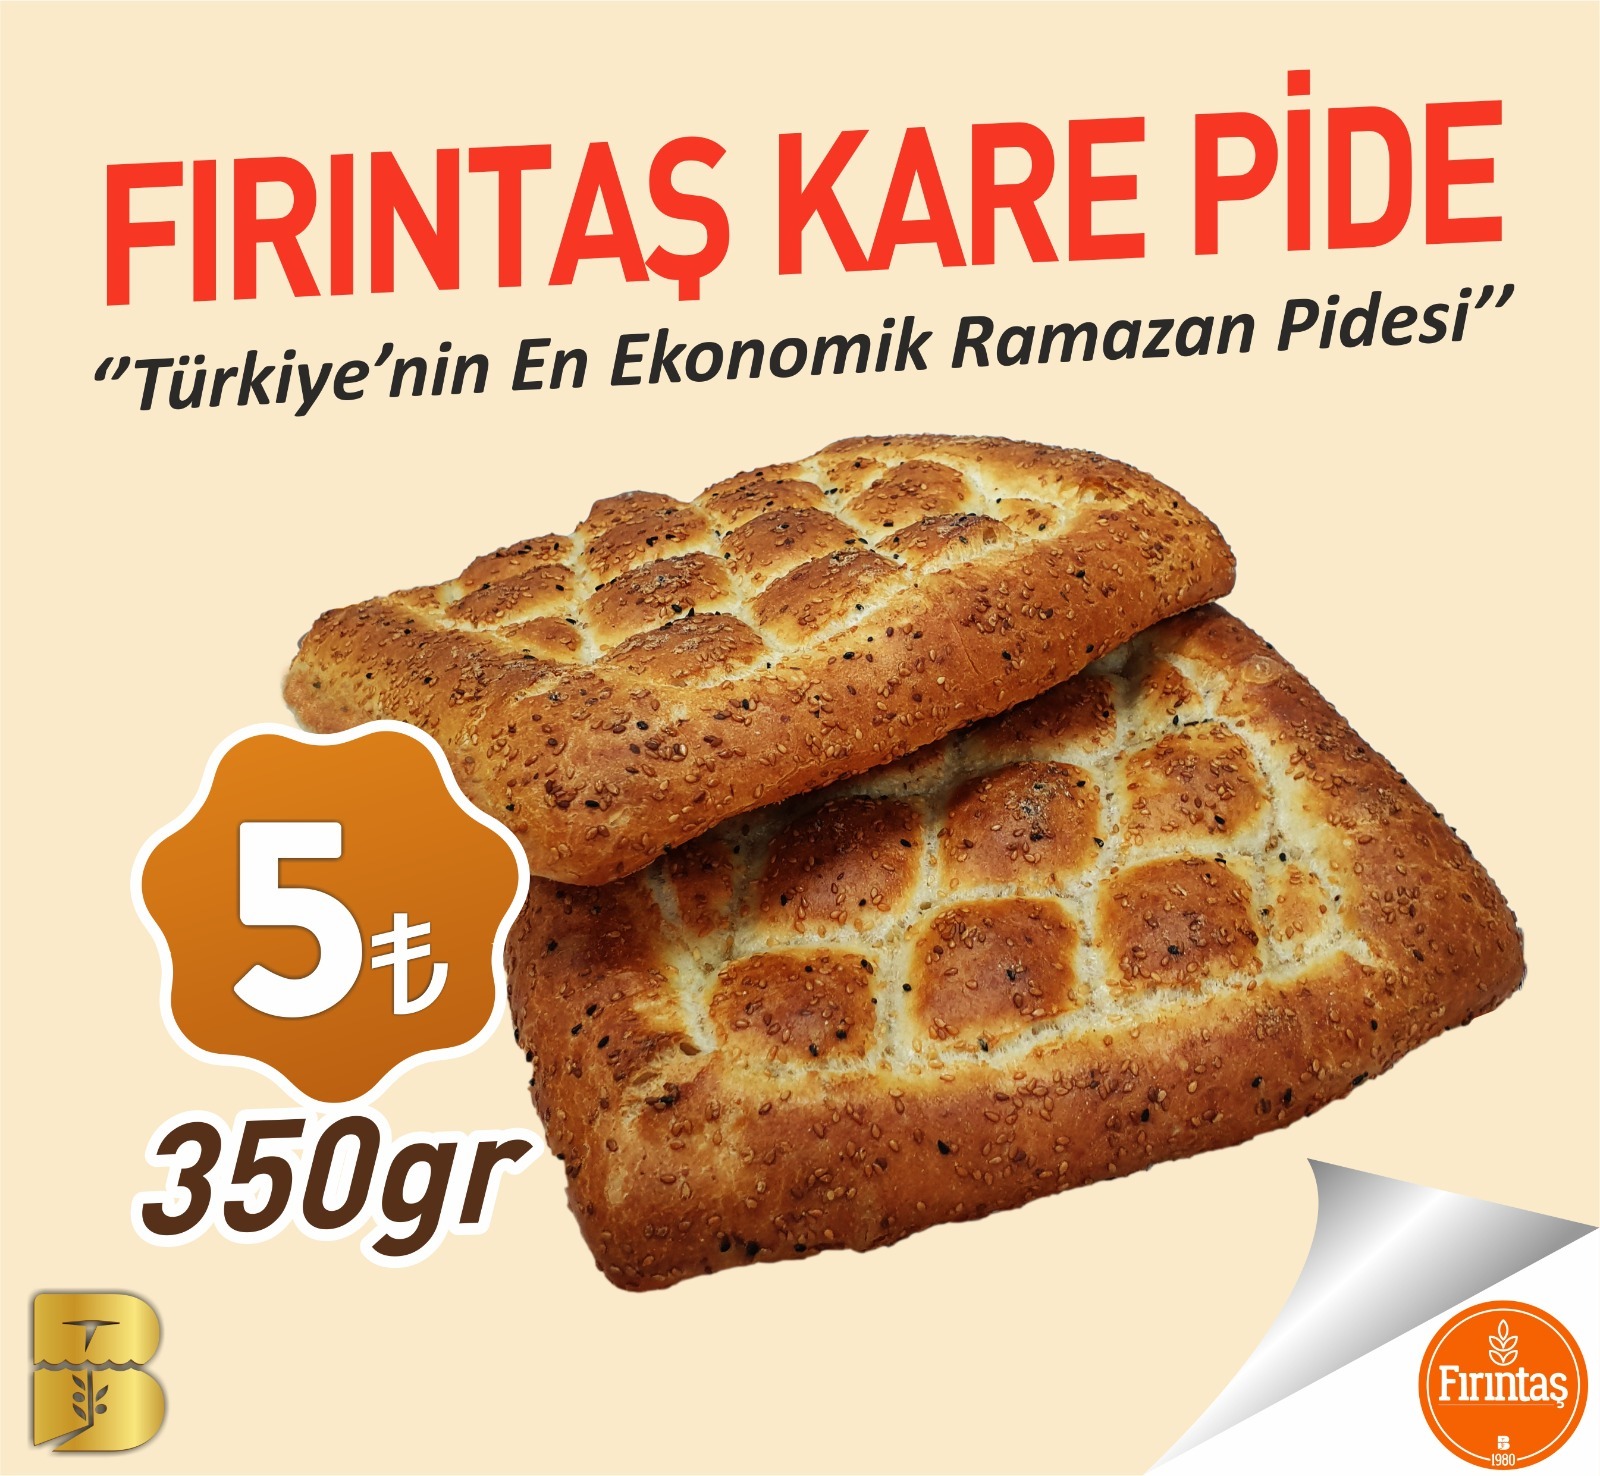 Balıkesir Büyükşehir Belediyesi, 350 gramlık Kare Ramazan Pidesi’nin fiyatını 5 Lira olarak belirledi.